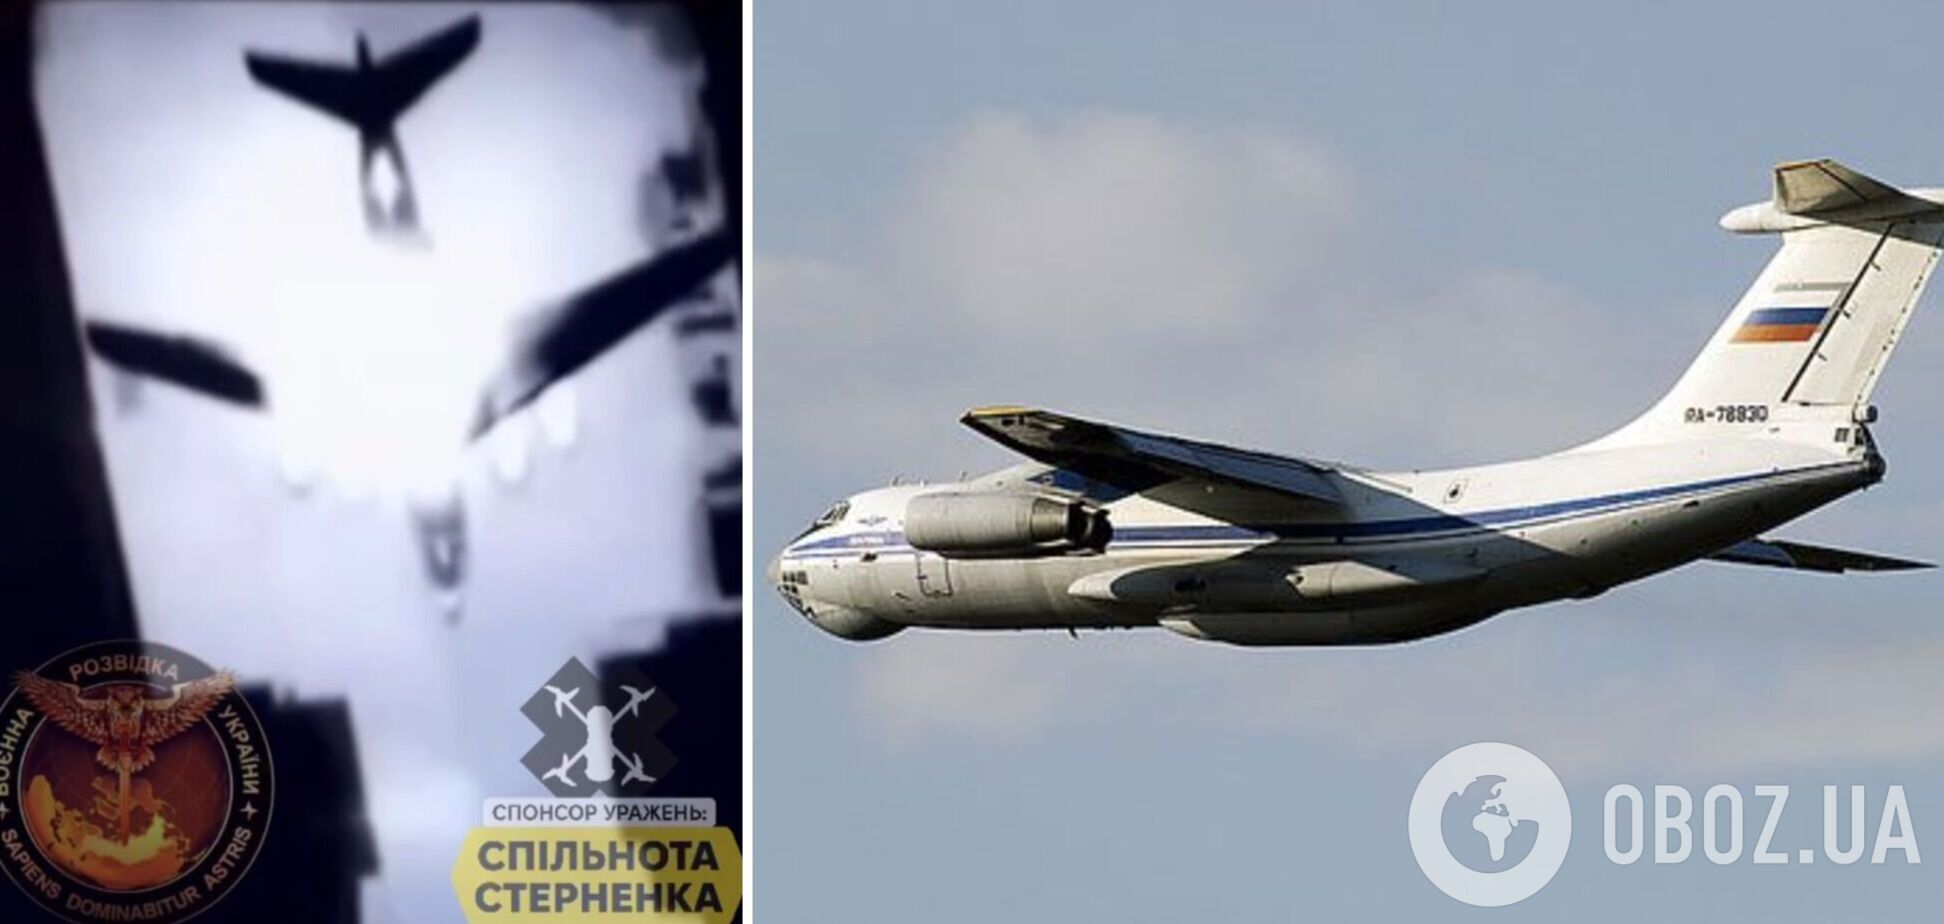 Война возвращается туда, откуда пришла: момент попадания по самолету Ил-76 в Пскове. Уникальное видео